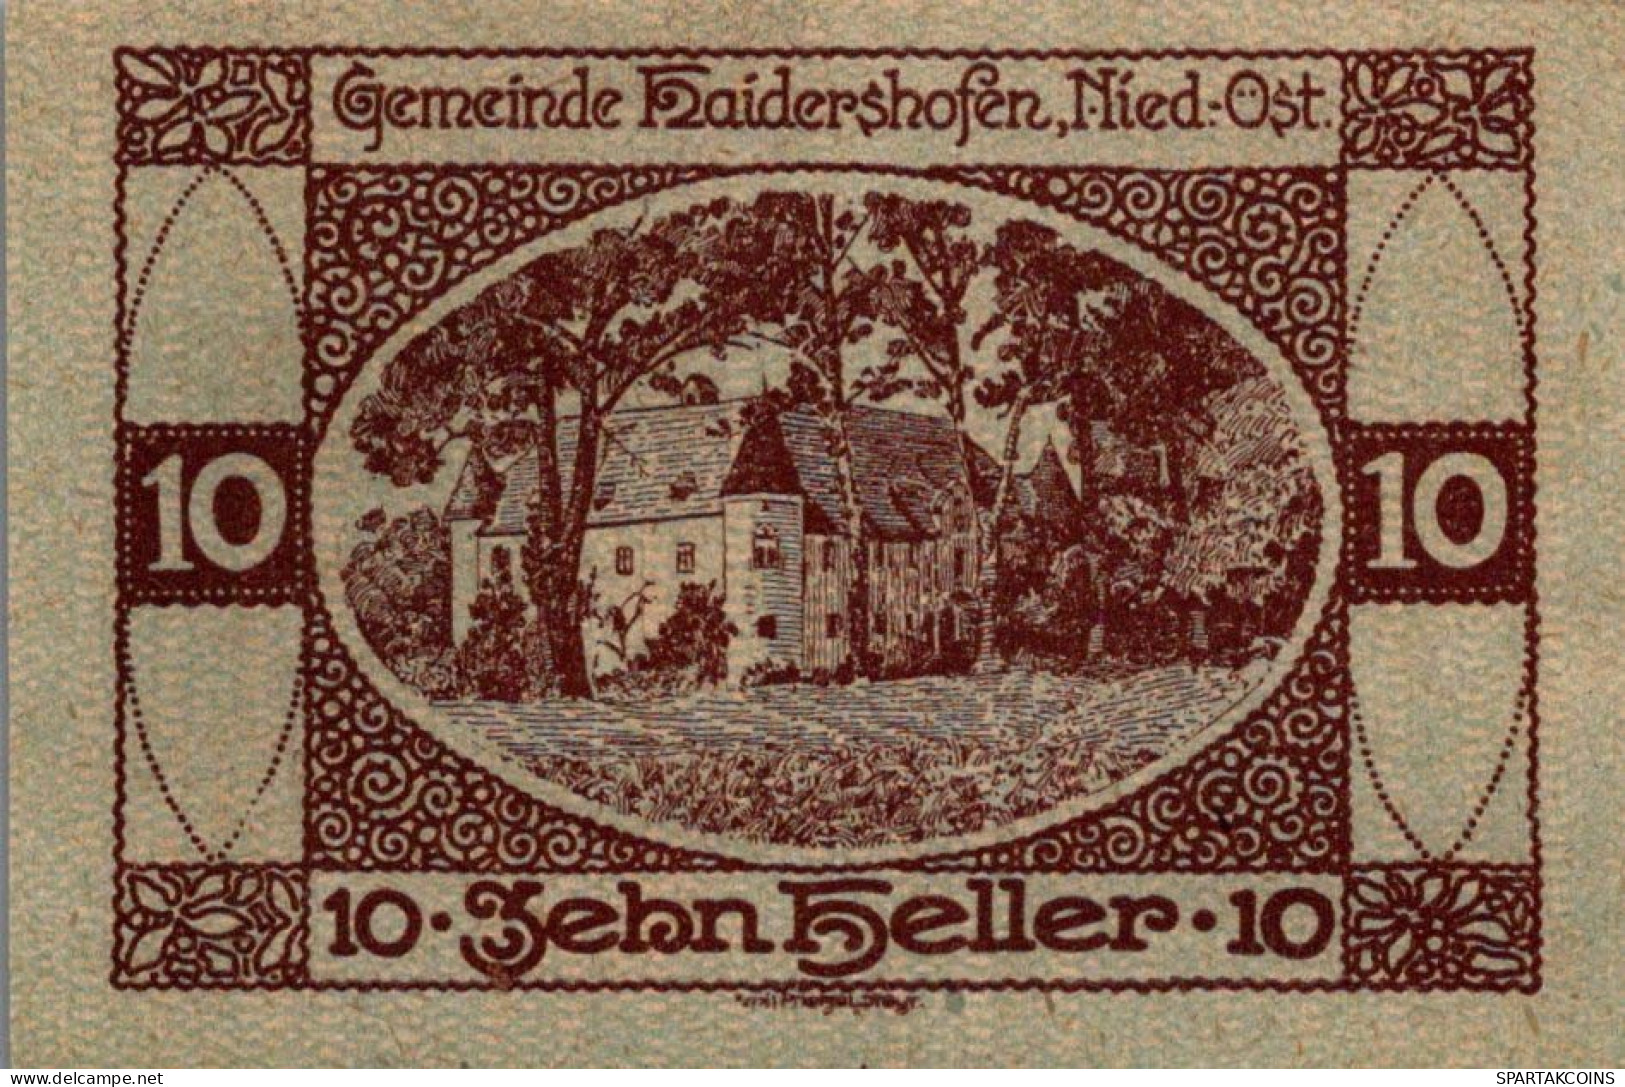 10 HELLER 1920 Stadt HAIDERSHOFEN Niedrigeren Österreich Notgeld Papiergeld Banknote #PG869 - Lokale Ausgaben